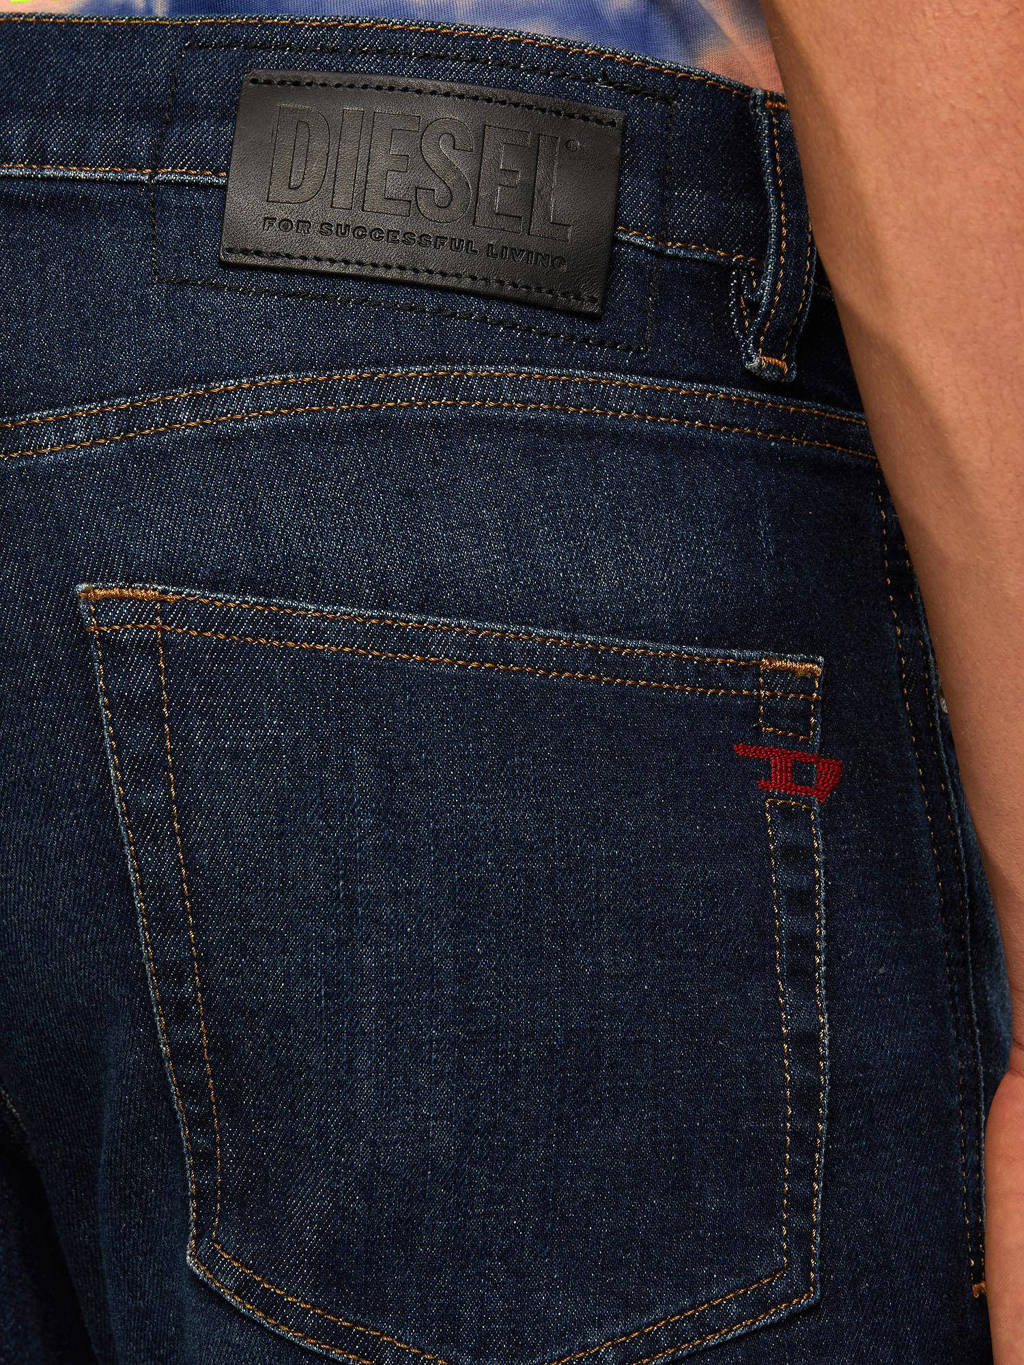 metgezel maatschappij matchmaker Diesel slim fit jeans D-Strukt dark denim | wehkamp